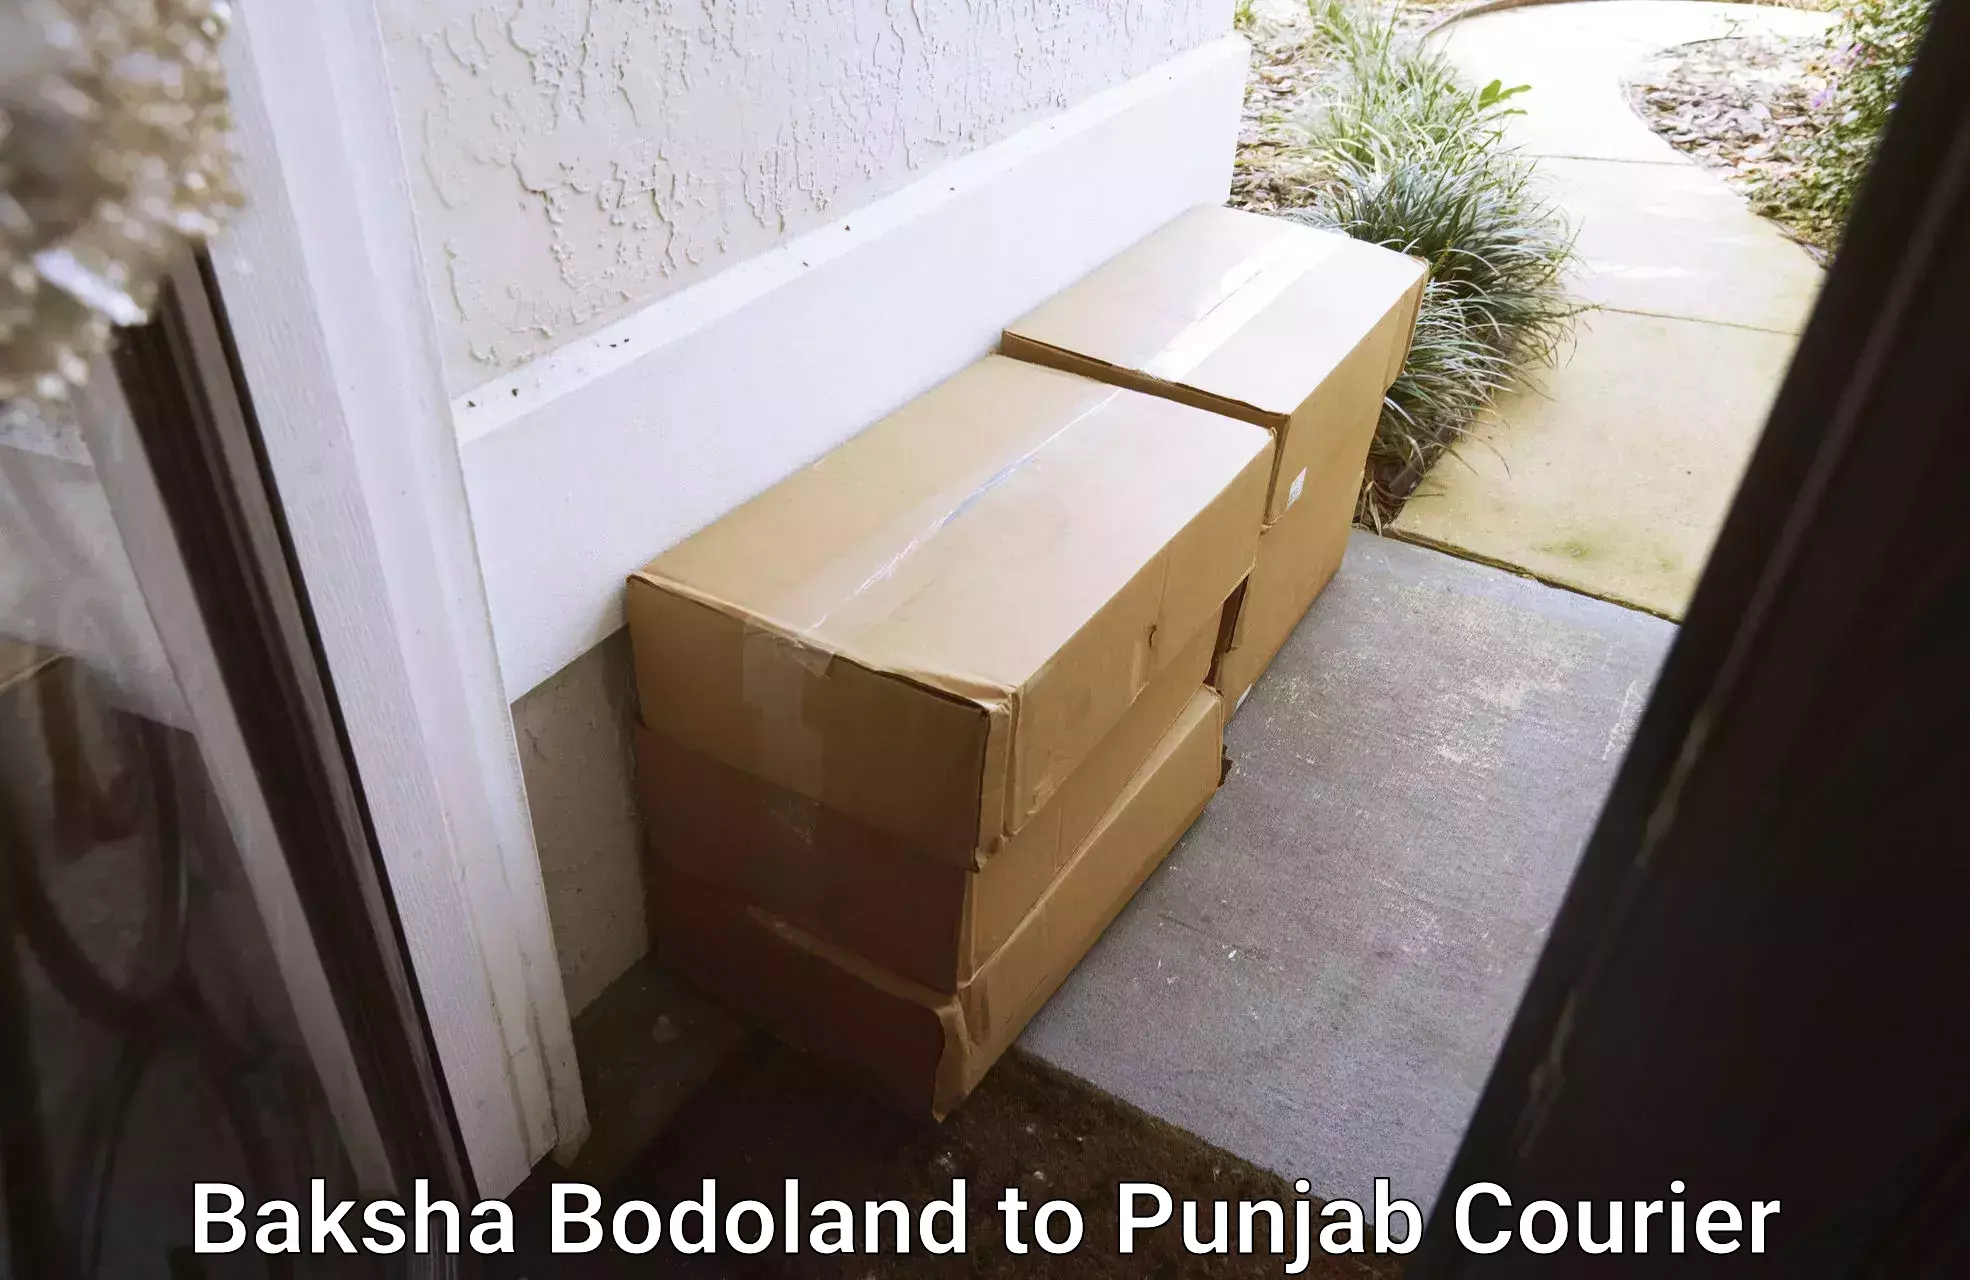 Diverse delivery methods Baksha Bodoland to Goindwal Sahib